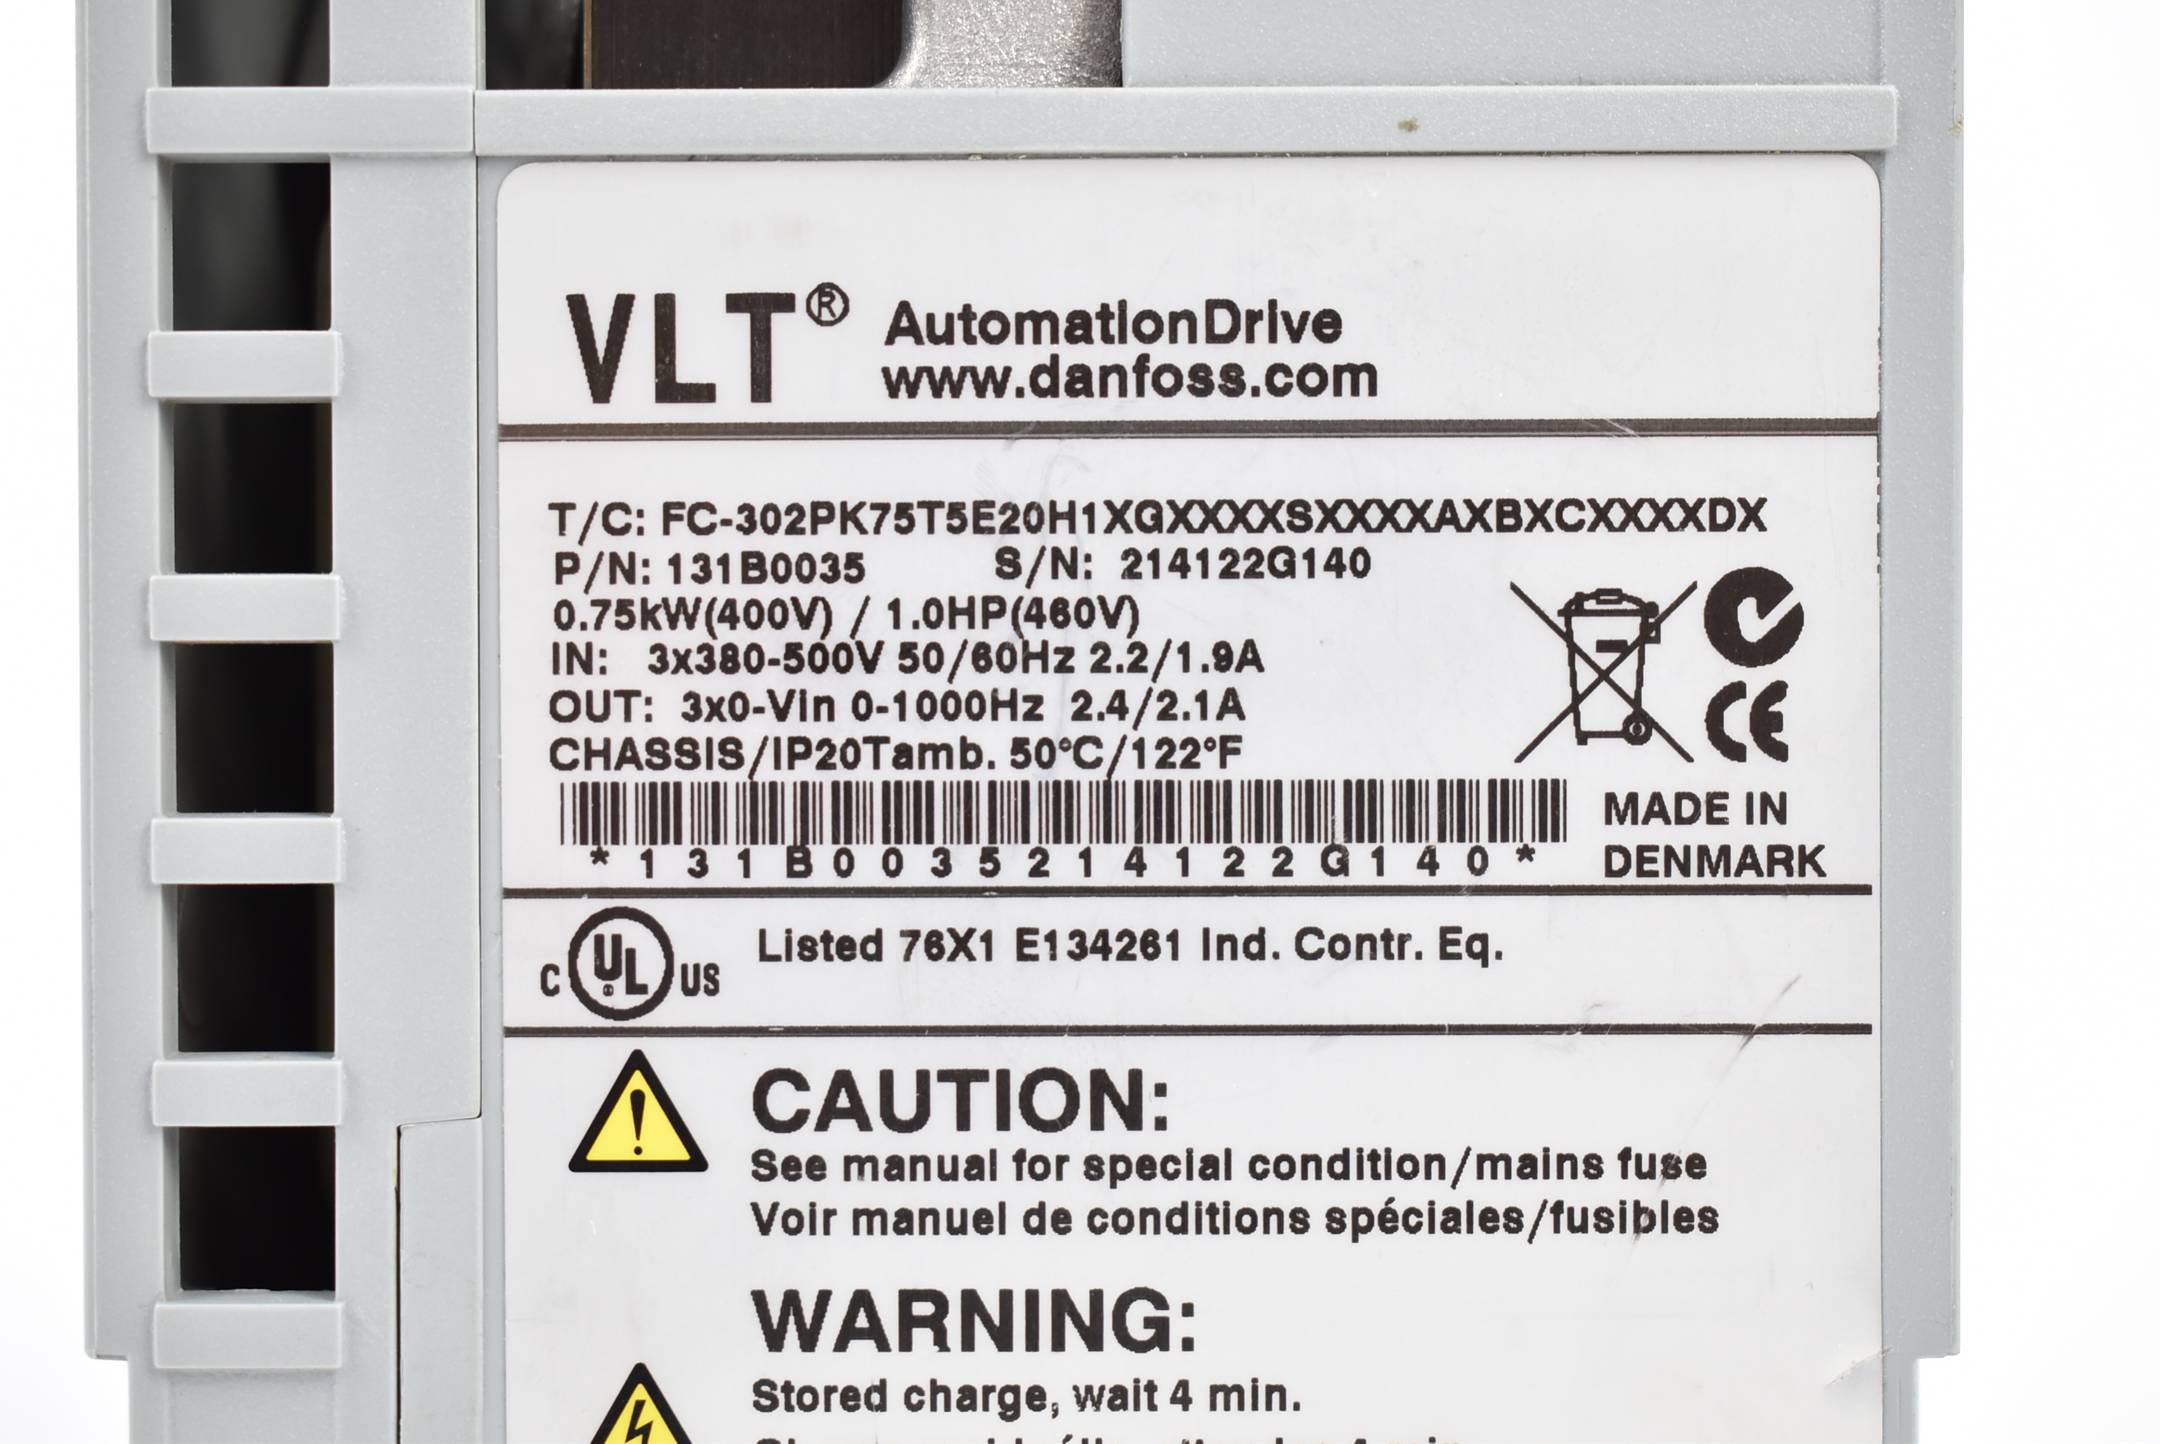 Danfoss VLT AutomationDrive  FC-302PK75T5E20H1XGXXXXSXXXXAXBXCXXXXDX / 131B0035